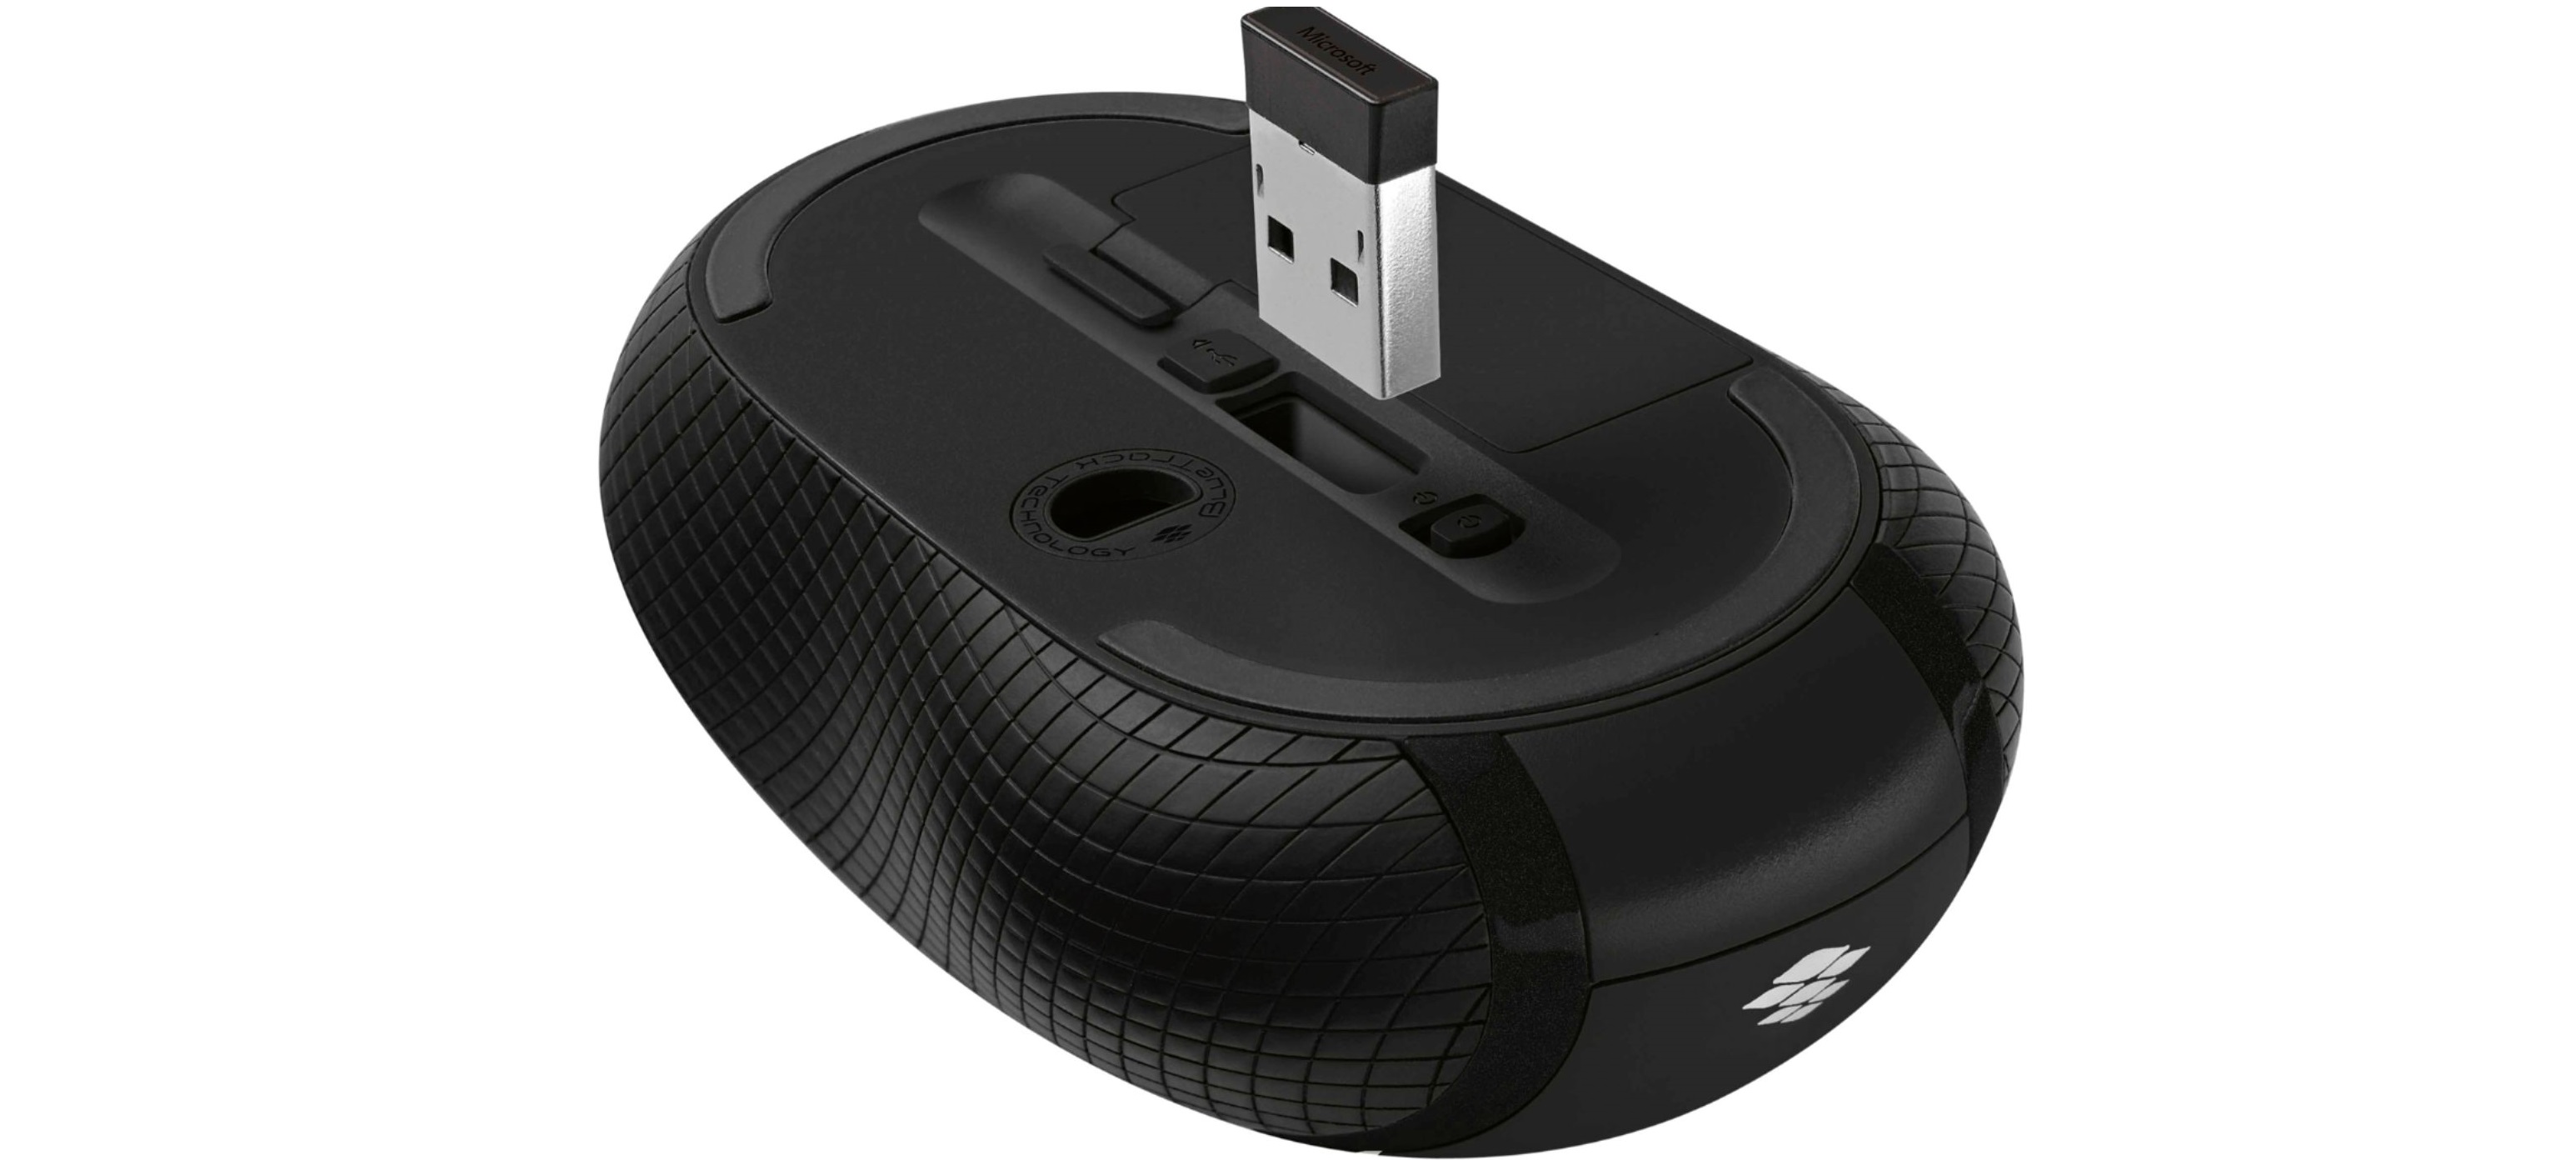 Chuột không dây Microsoft Wireless Mouse 4000 BlueTrack - D5D-00007 sử dụng cộng nghệ không dây cao cấp